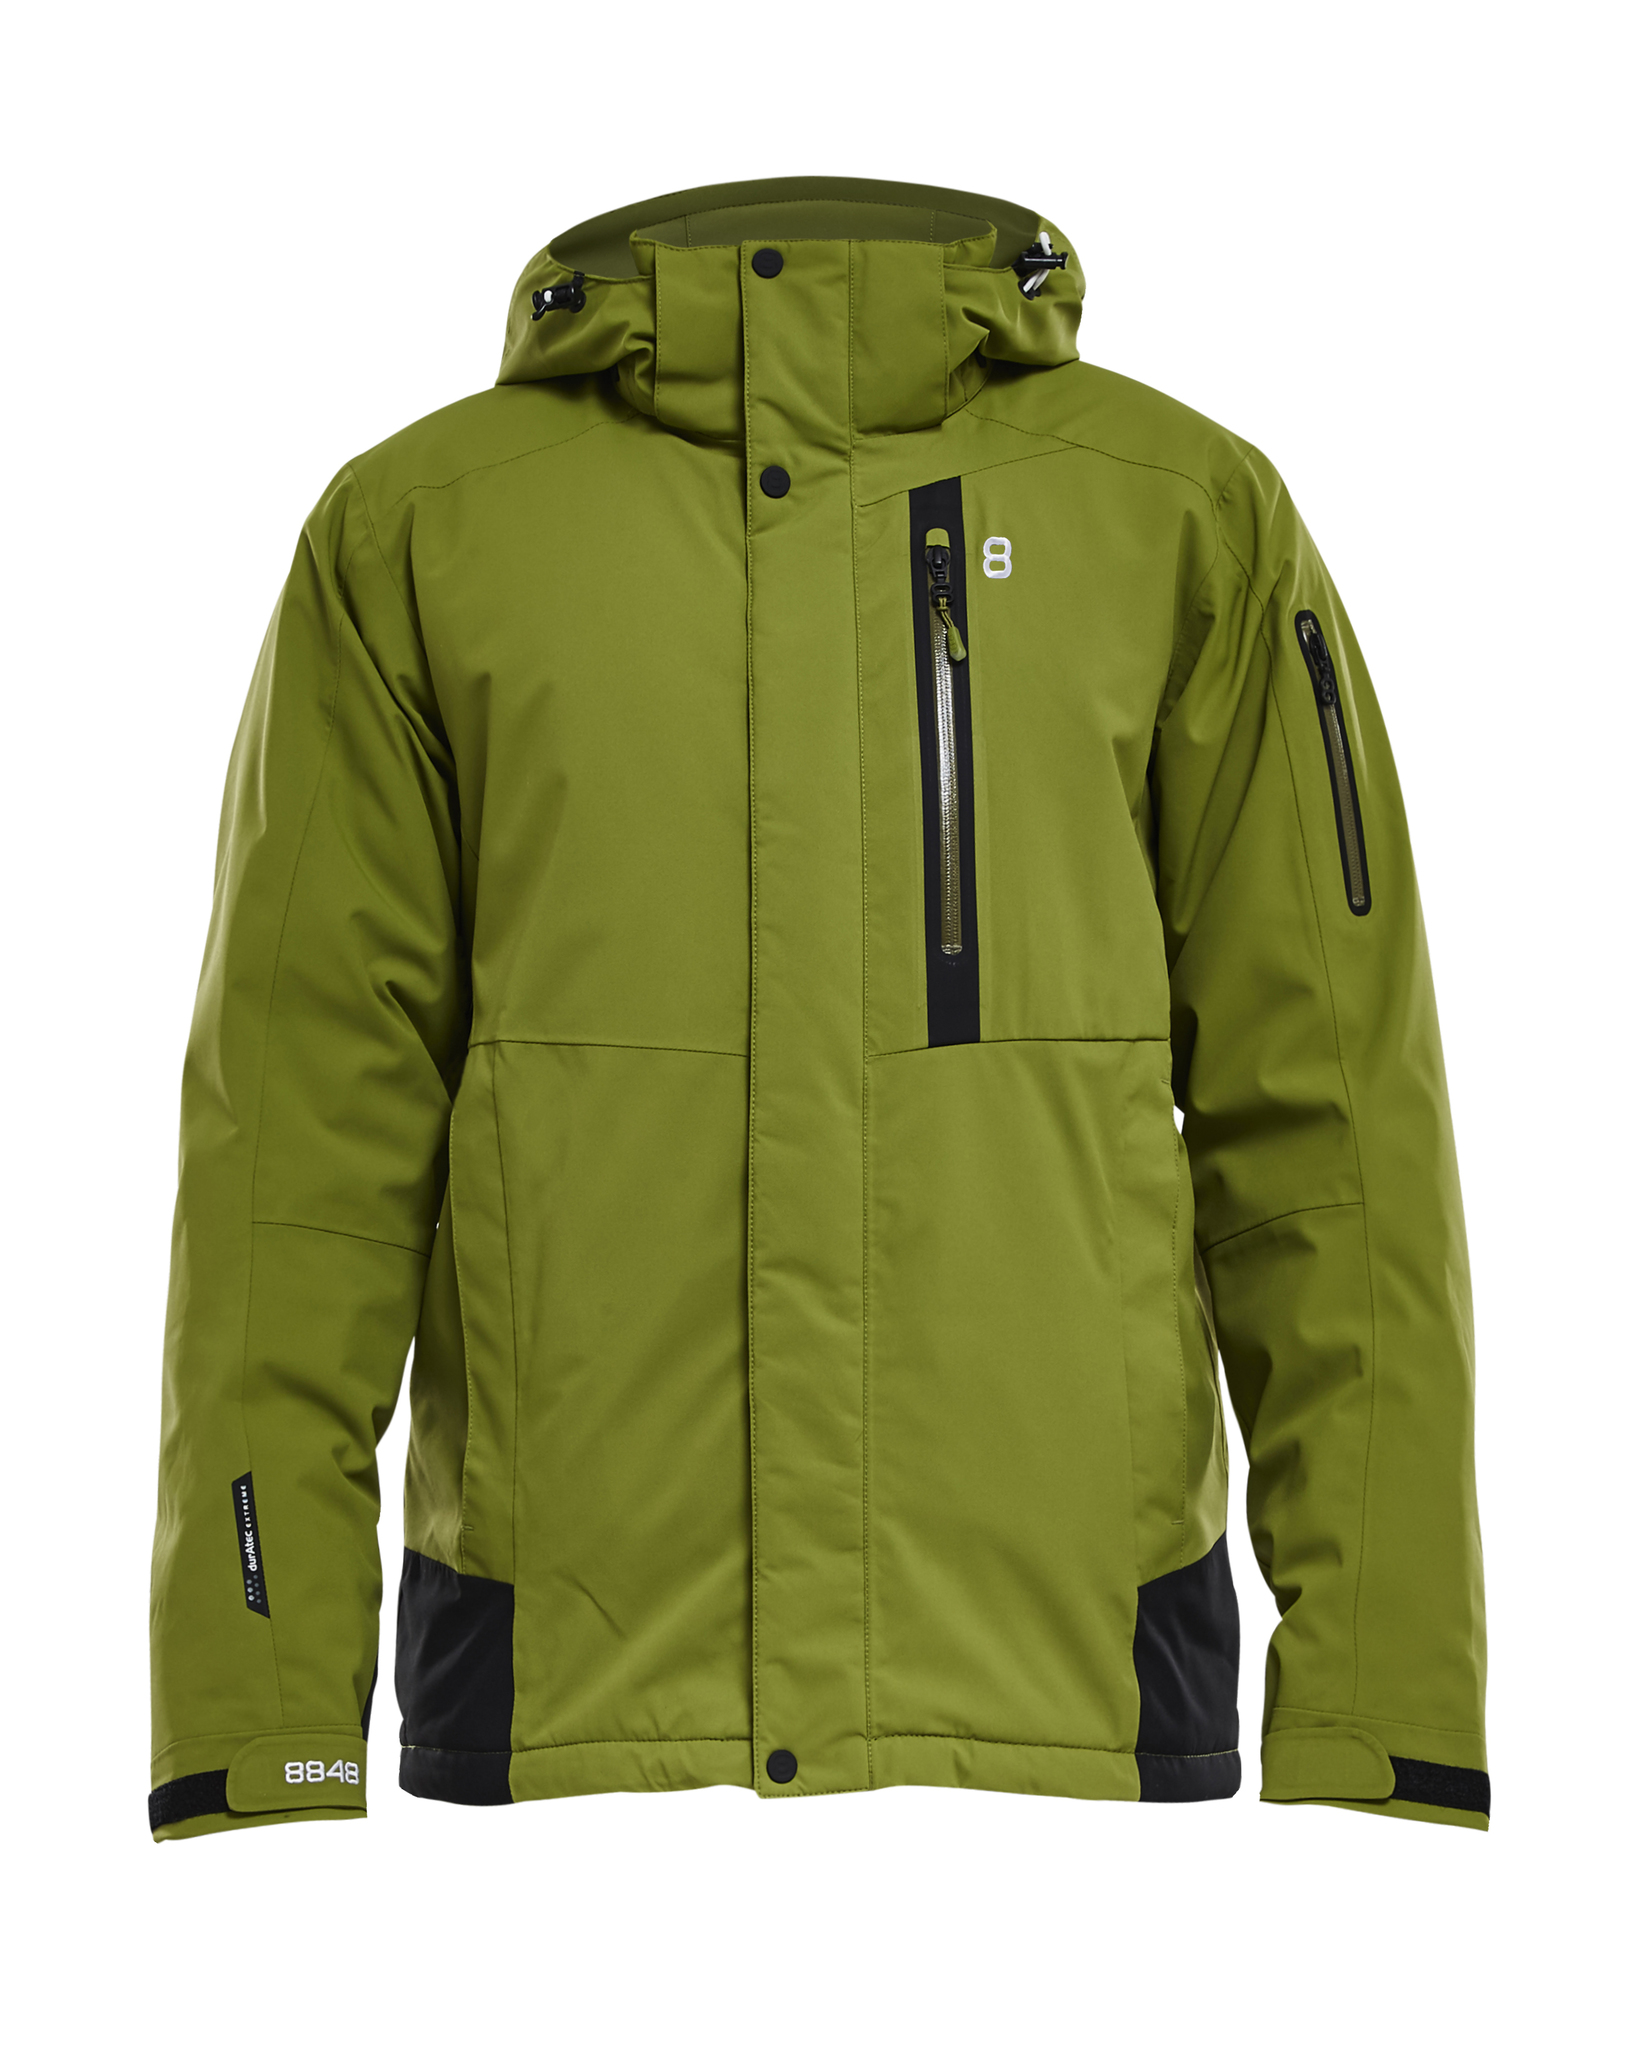 Мужская горнолыжная куртка 8848 Altitude купить в Интернет-магазине